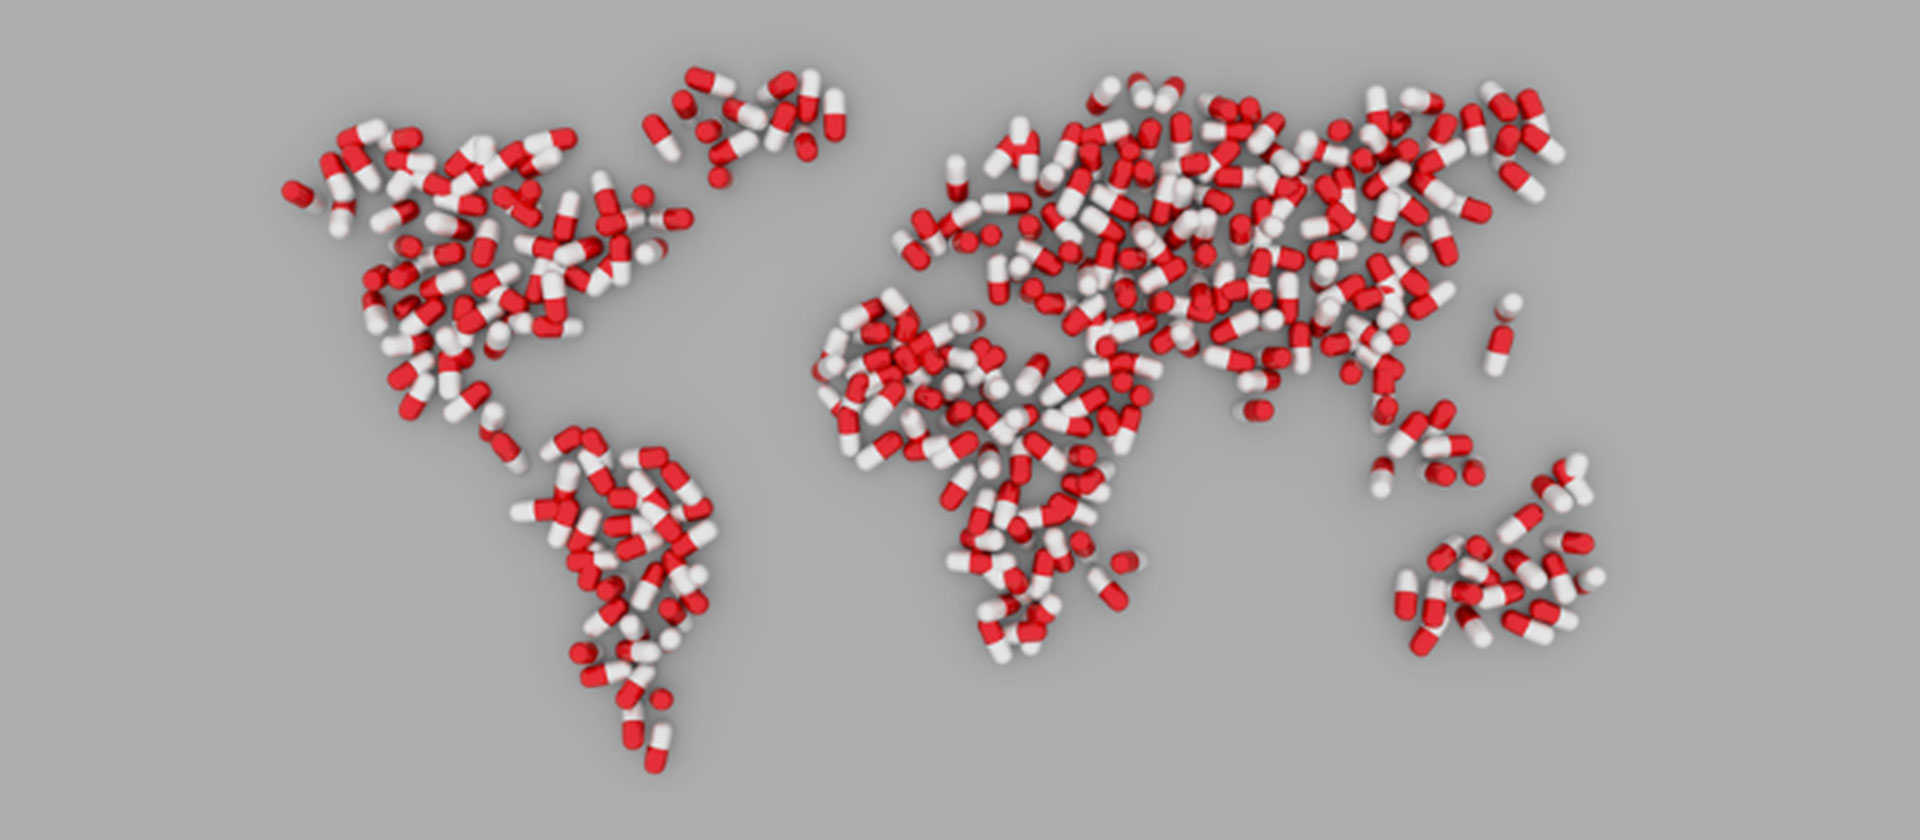 World map made of pills